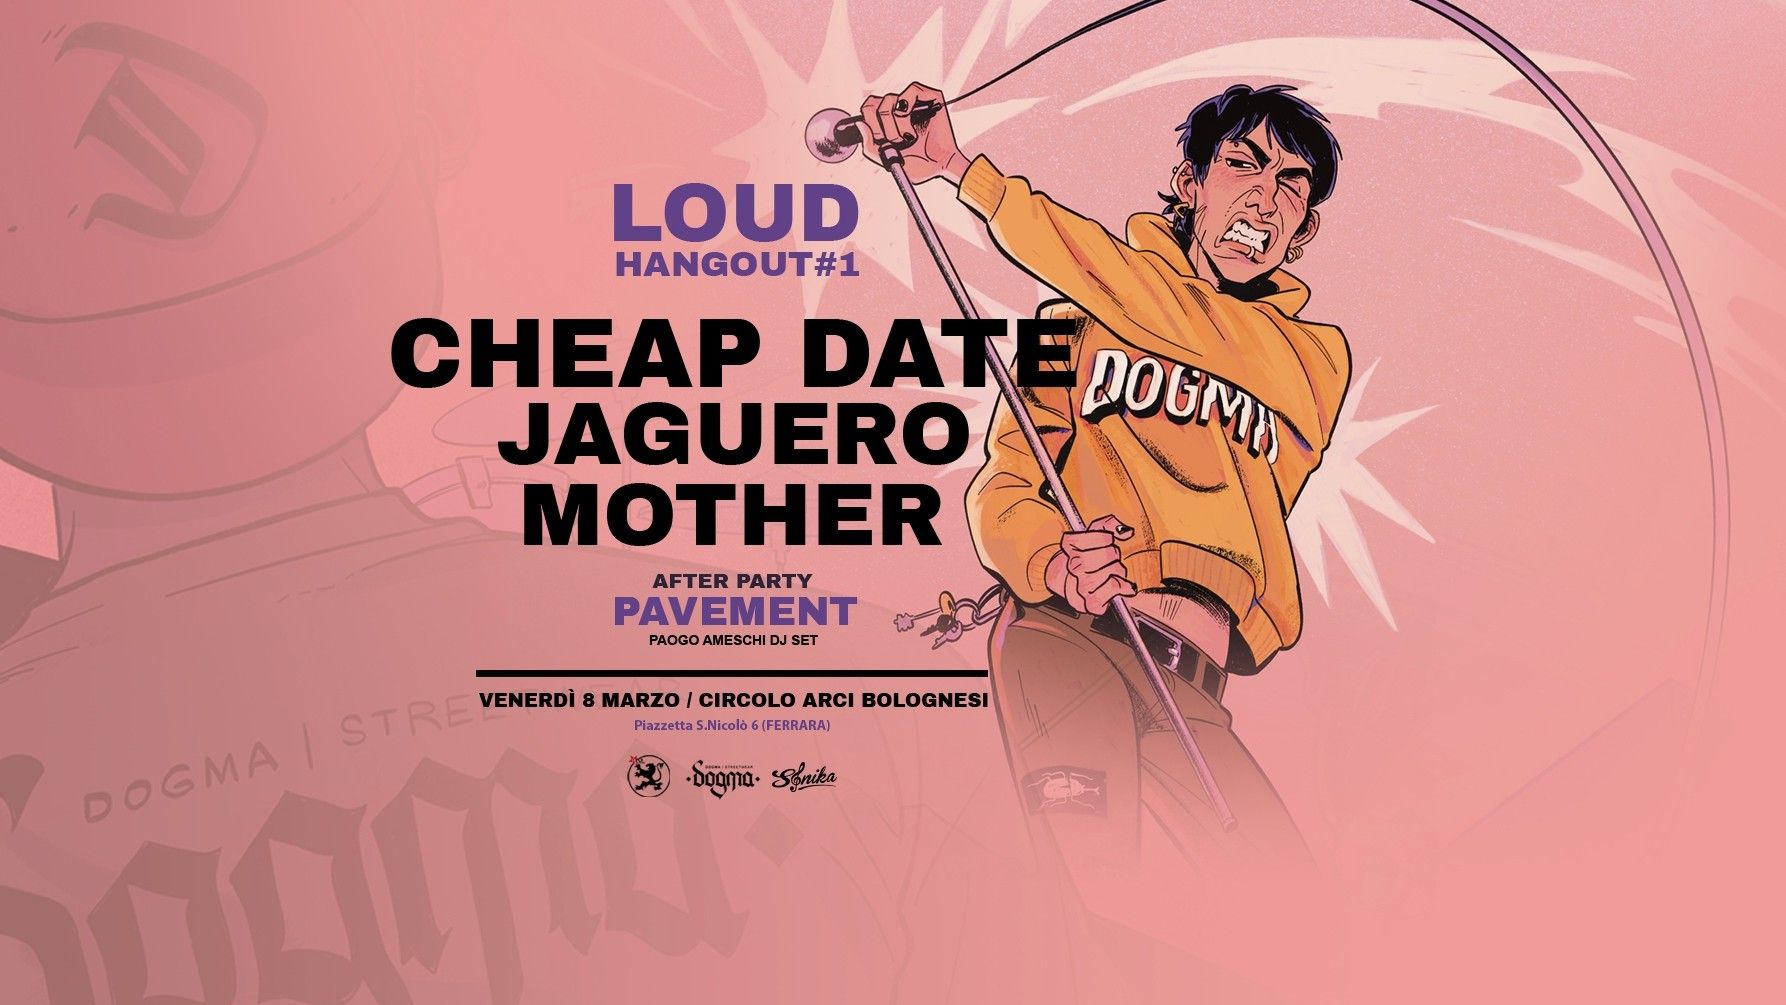 Dogma Loud Hangout #1 / Mother - Jaguero - Cheap Date